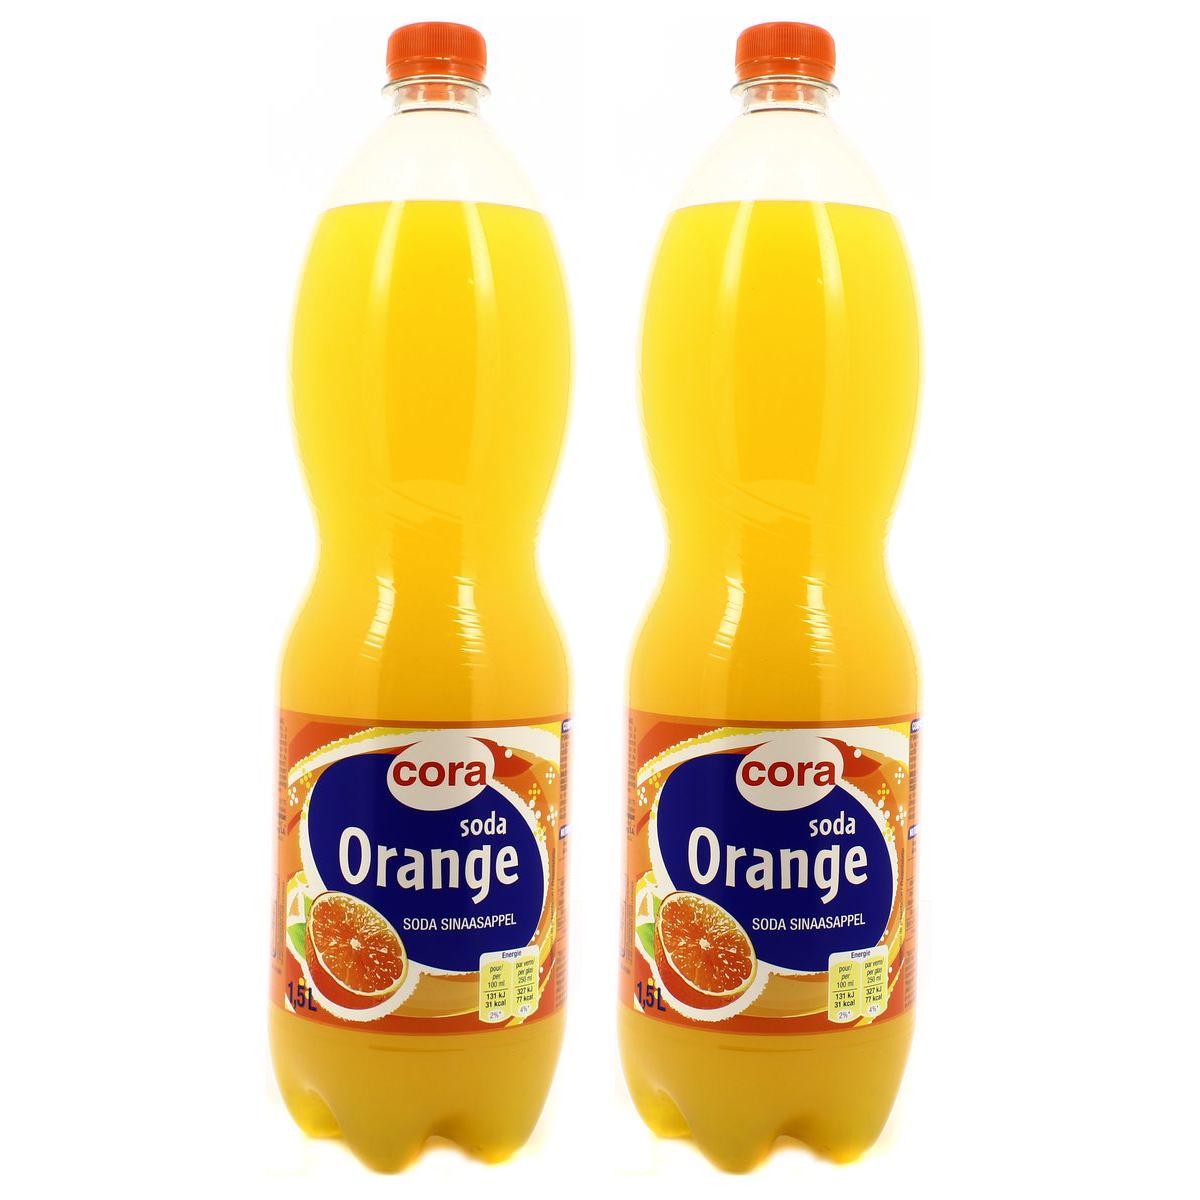 Achat / Vente Promotion Cora Soda orange, Lot de 2 bouteilles de 1.5L